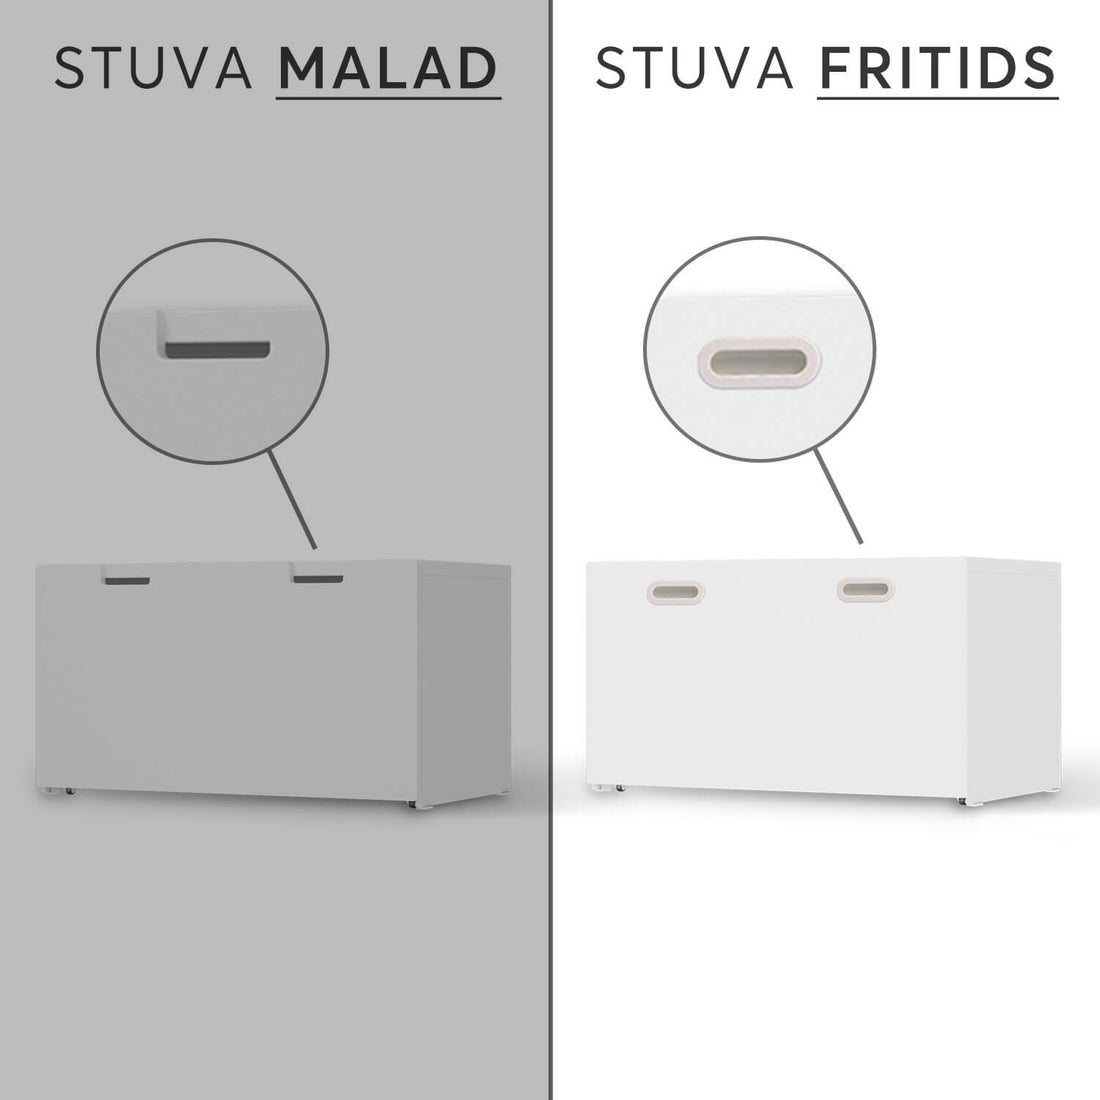 Vergleich IKEA Stuva Fritids / Malad - Flieder Light